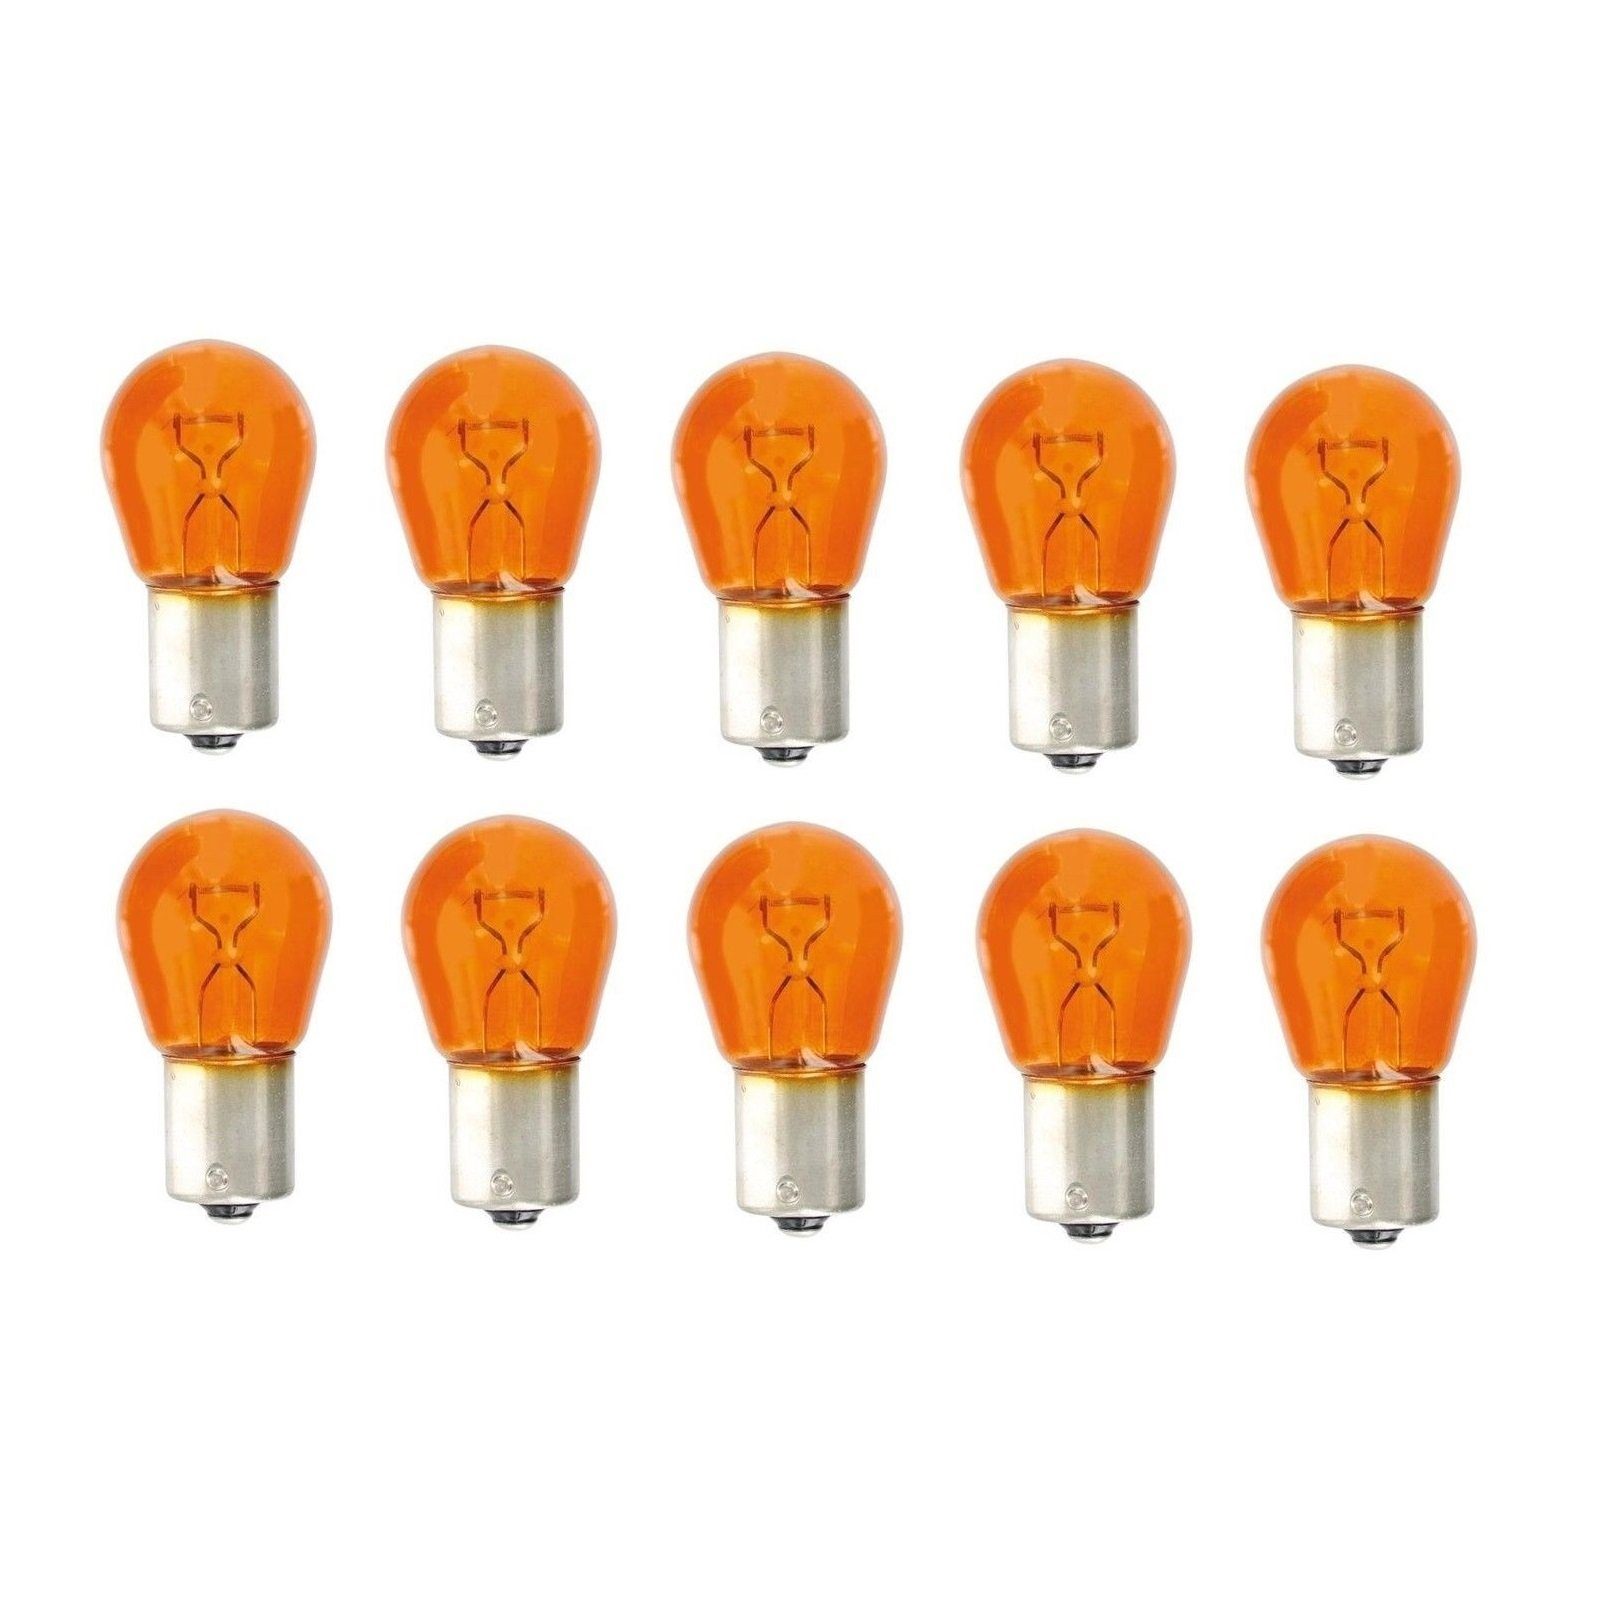 Blinker 21W Kugel Business Kummert Blinker BAU15s PY21W Blinkerlampe Lampe 12V orange